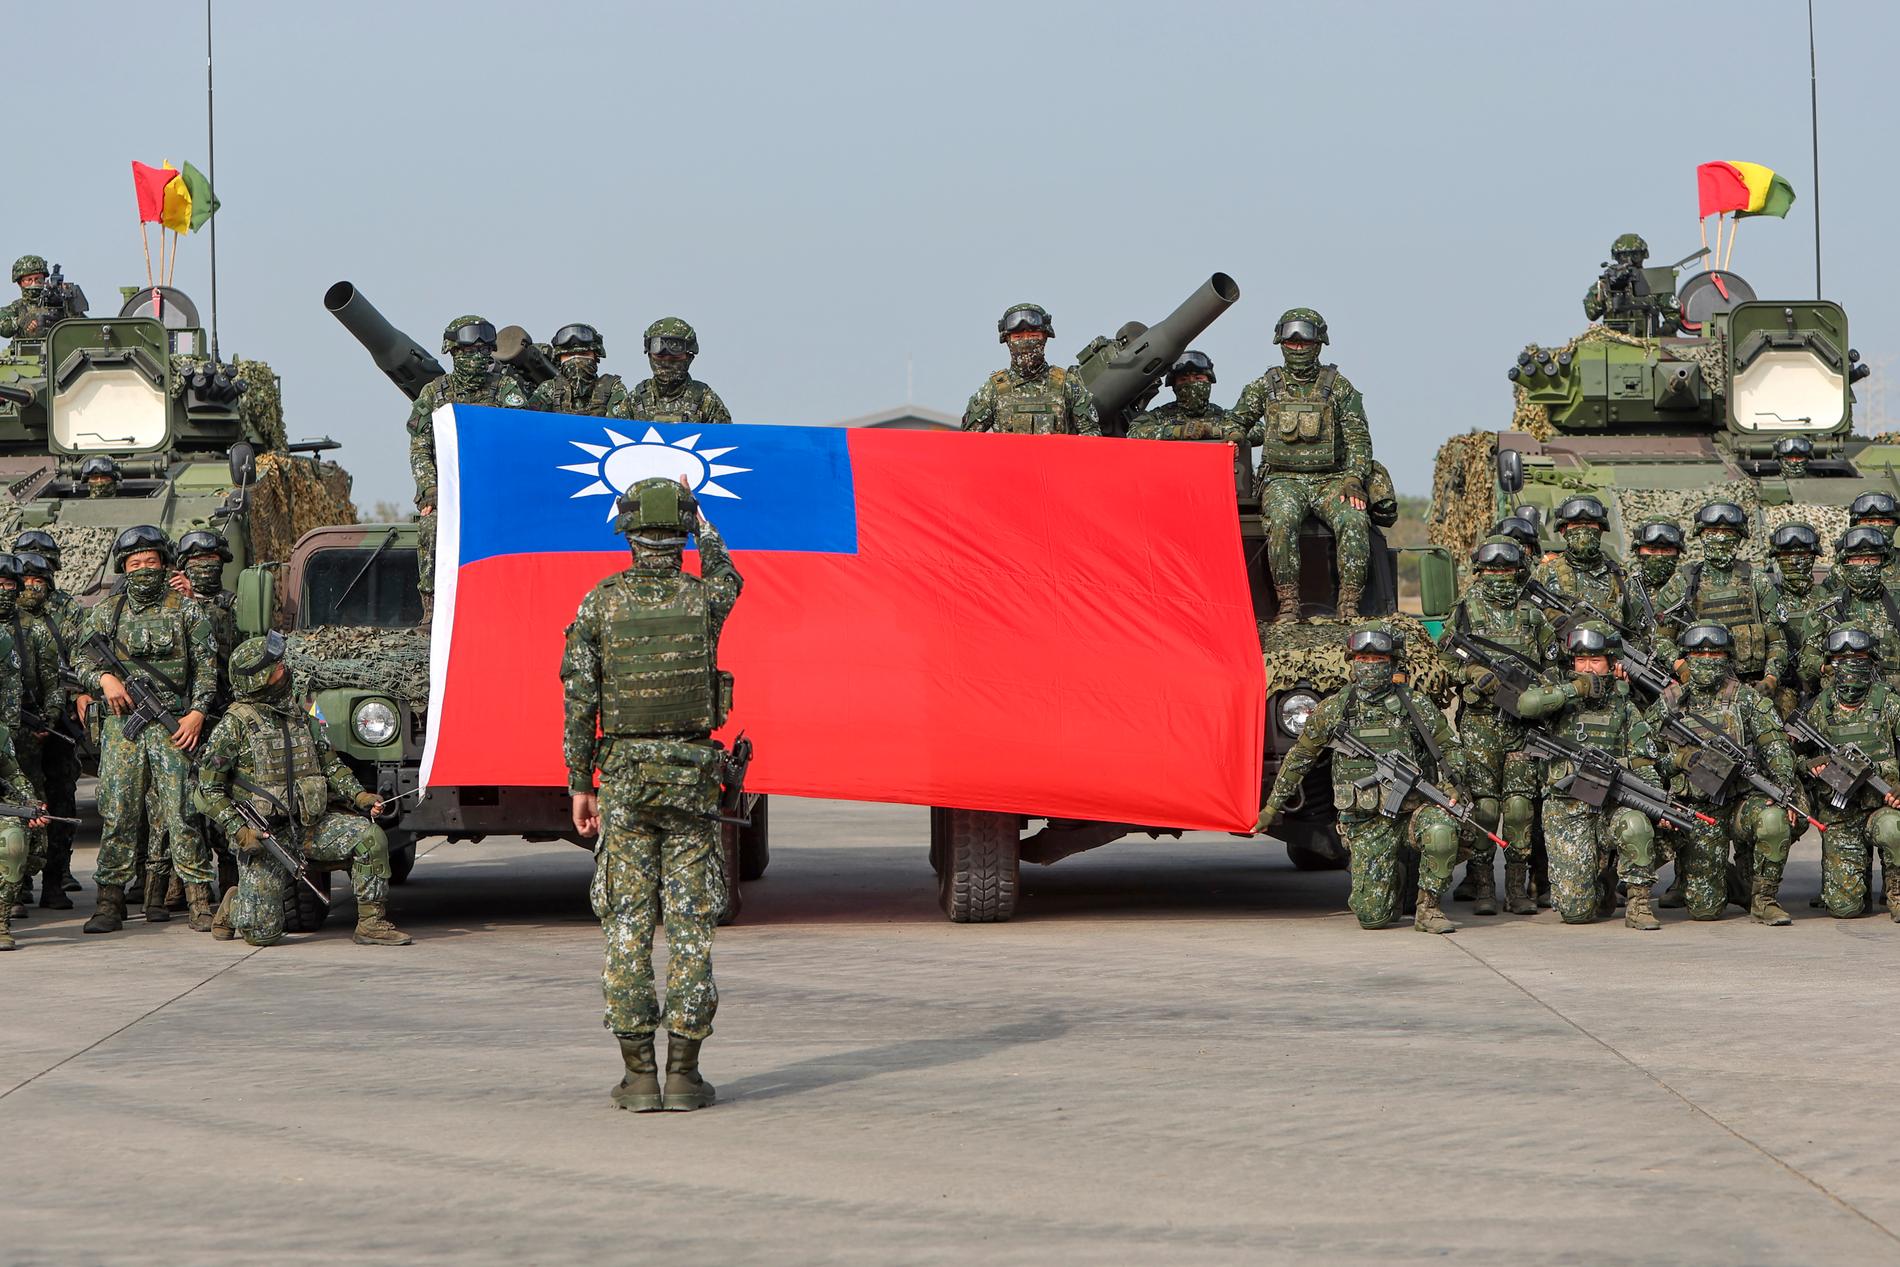  Soldater poserar med en taiwanesisk flagga den 11 januari, efter en beredskapsövning som simulerar försvaret mot Pekings militära intrång. Kina förnyade under onsdagen sina hot om att attackera Taiwan och varnade för att utländska politiker som interagerar med den självstyrande ön ”leker med elden”.